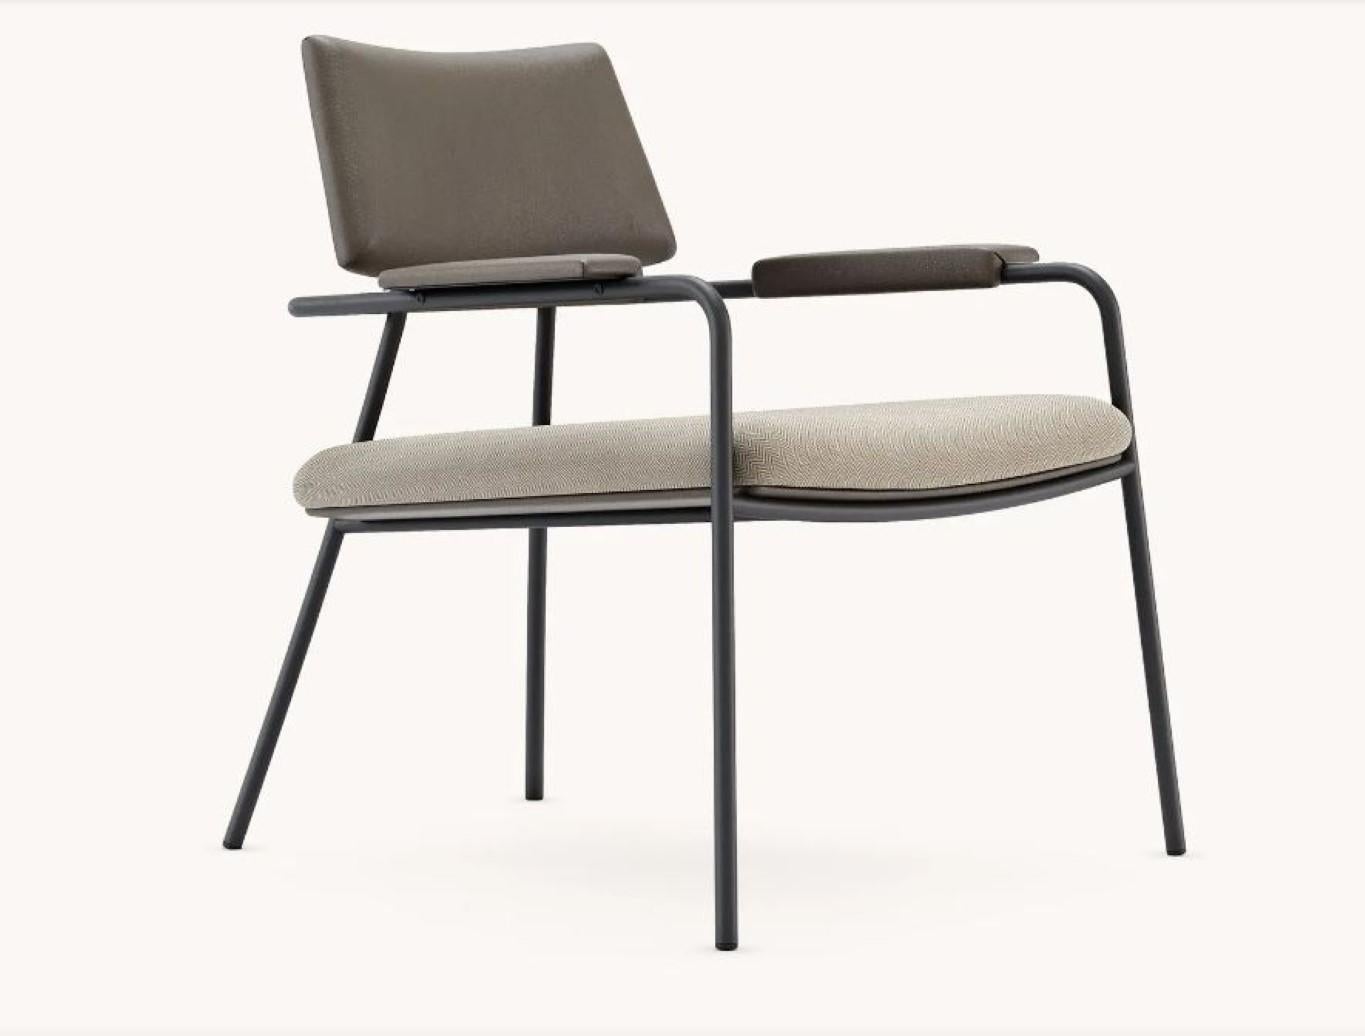 Stranger Sessel von Domkapa
MATERIALIEN: Naturleder, schwarzer texturierter Stahl.
Abmessungen:  B 72 x T 77 x H 82 cm. 
Auch in verschiedenen MATERIALEN erhältlich. Bitte kontaktieren Sie uns.

Der Sessel Stranger ist eine zeitgemäße Wahl für